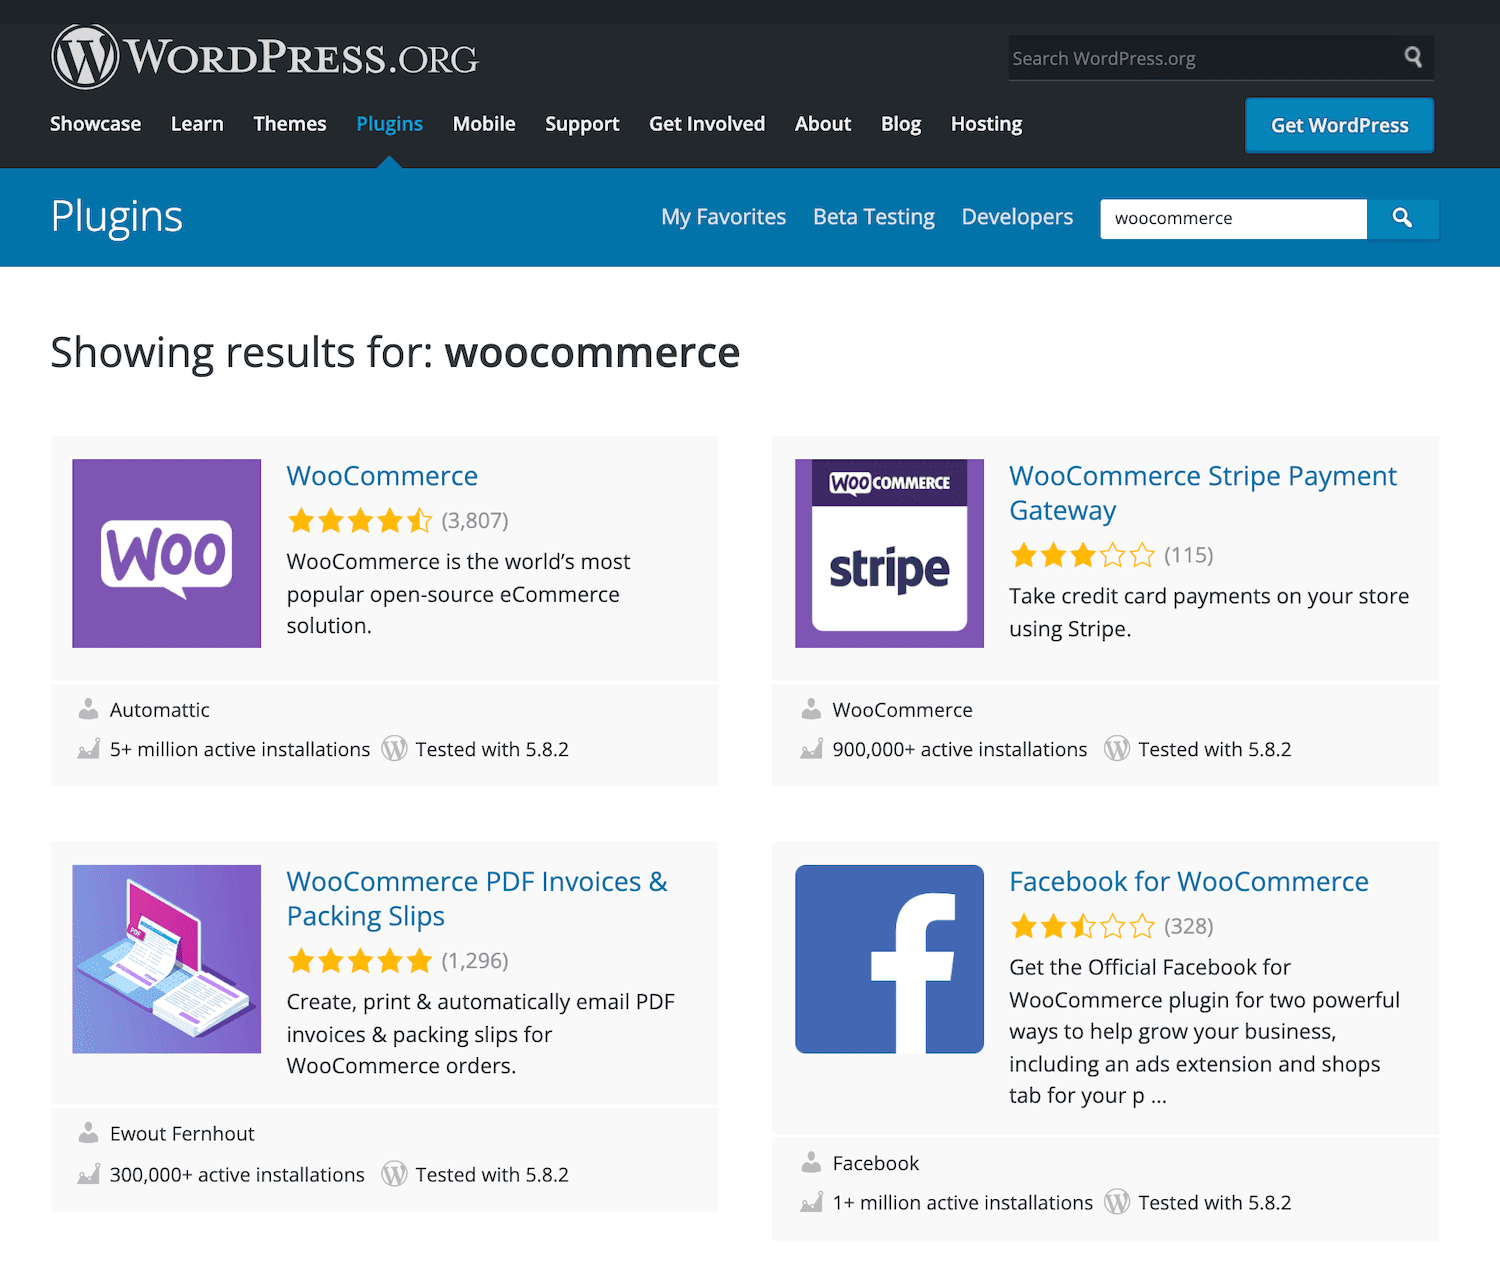 Los plugins de WooCommerce en WordPress.